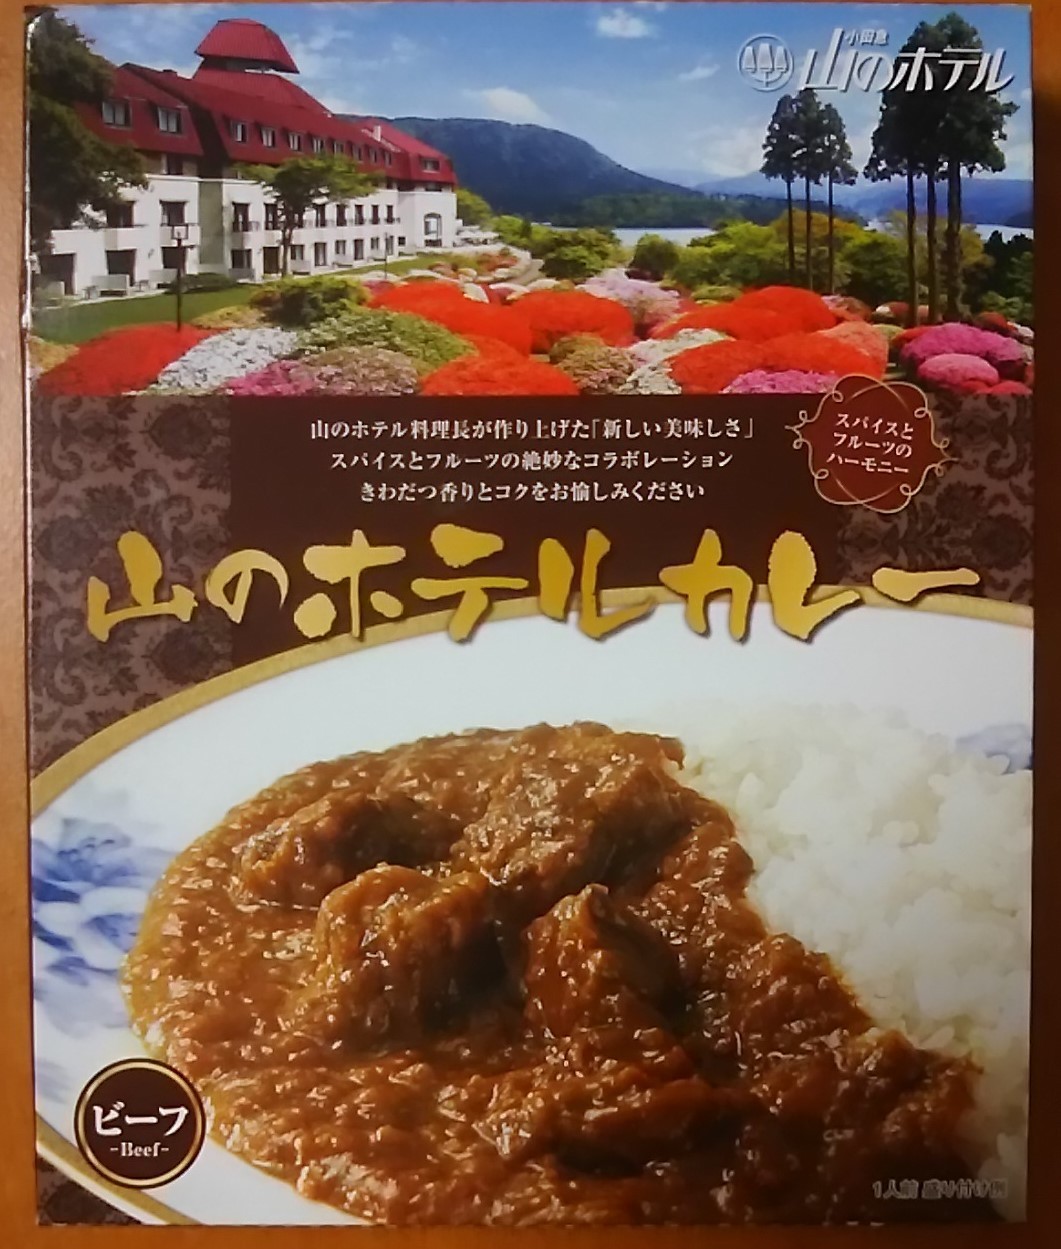 小田急 山のホテルカレー: ご当地レトルトカレーで単身赴任の寂しい夕食